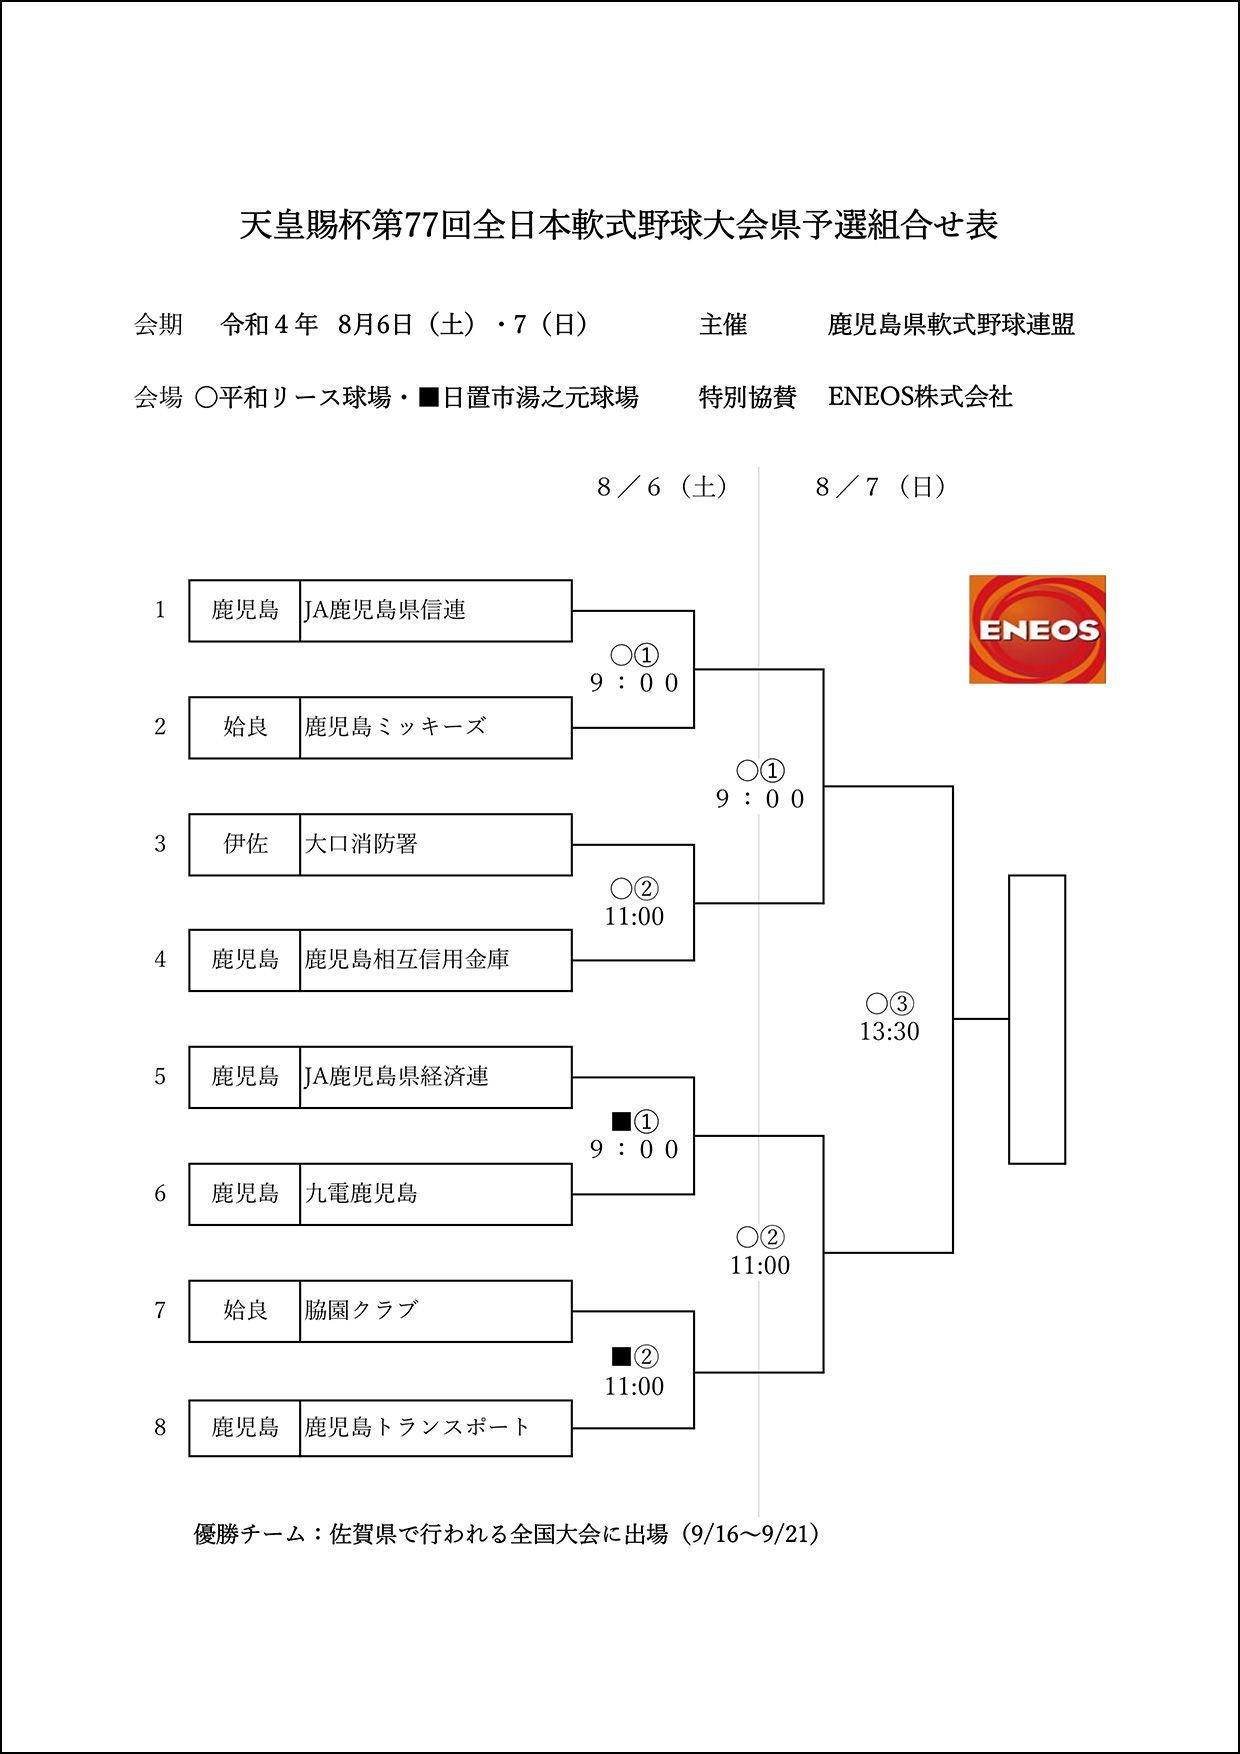 【組合せ】天皇賜杯第77回全日本軟式野球大会県予選